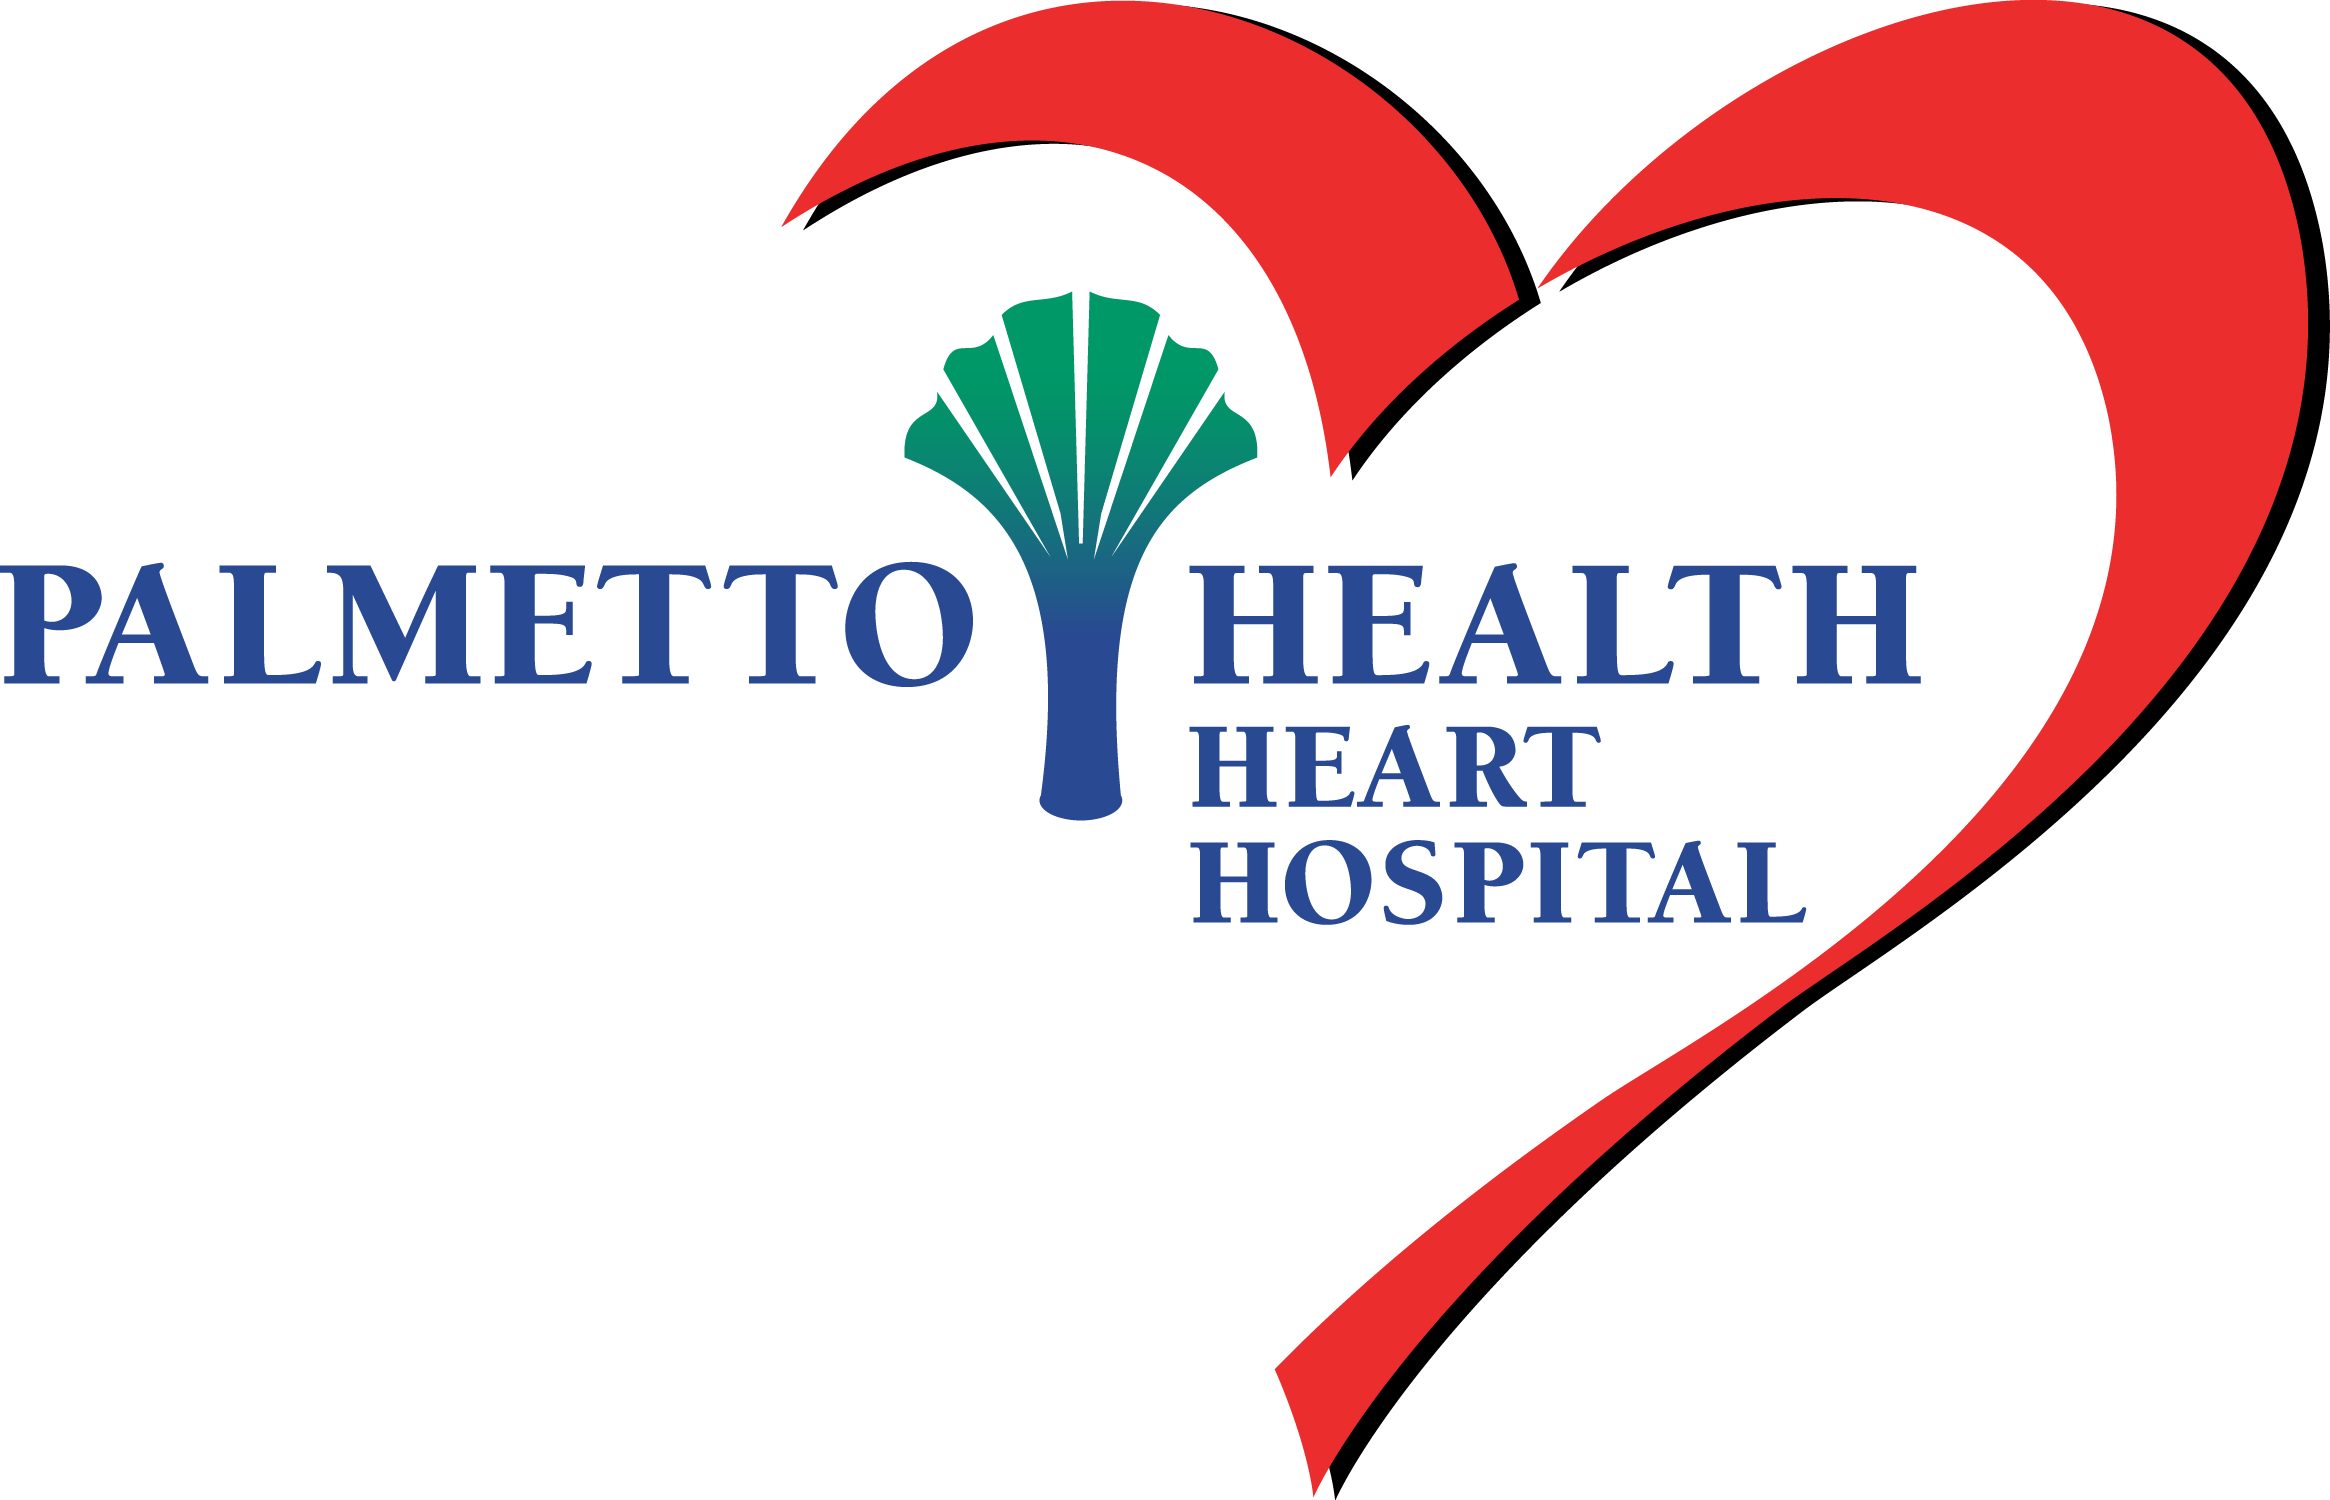 Palmetto Health Heart Hospital Logo - Palmetto Health Heart Hospital (2330x1500)